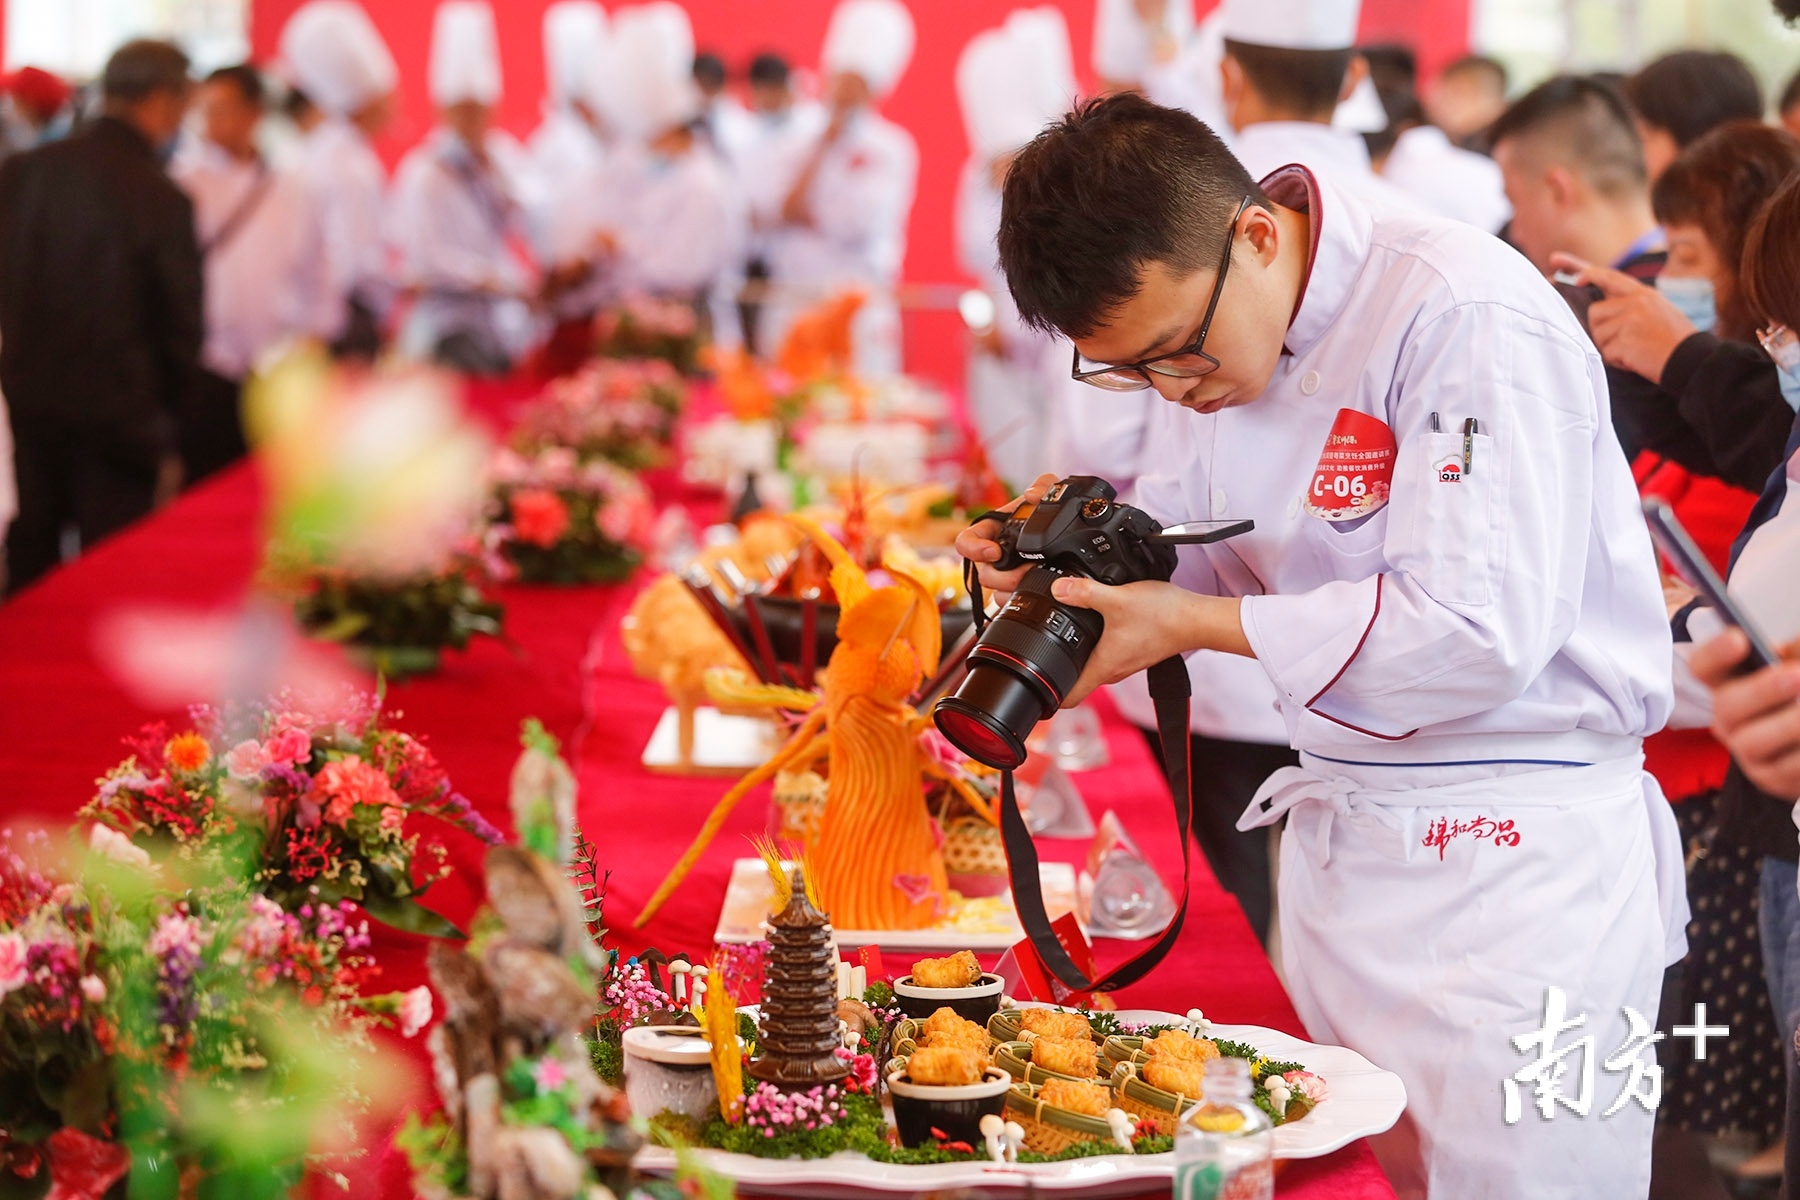 逐鹿厨艺、各展风采 青羊区举办中式烹饪大赛